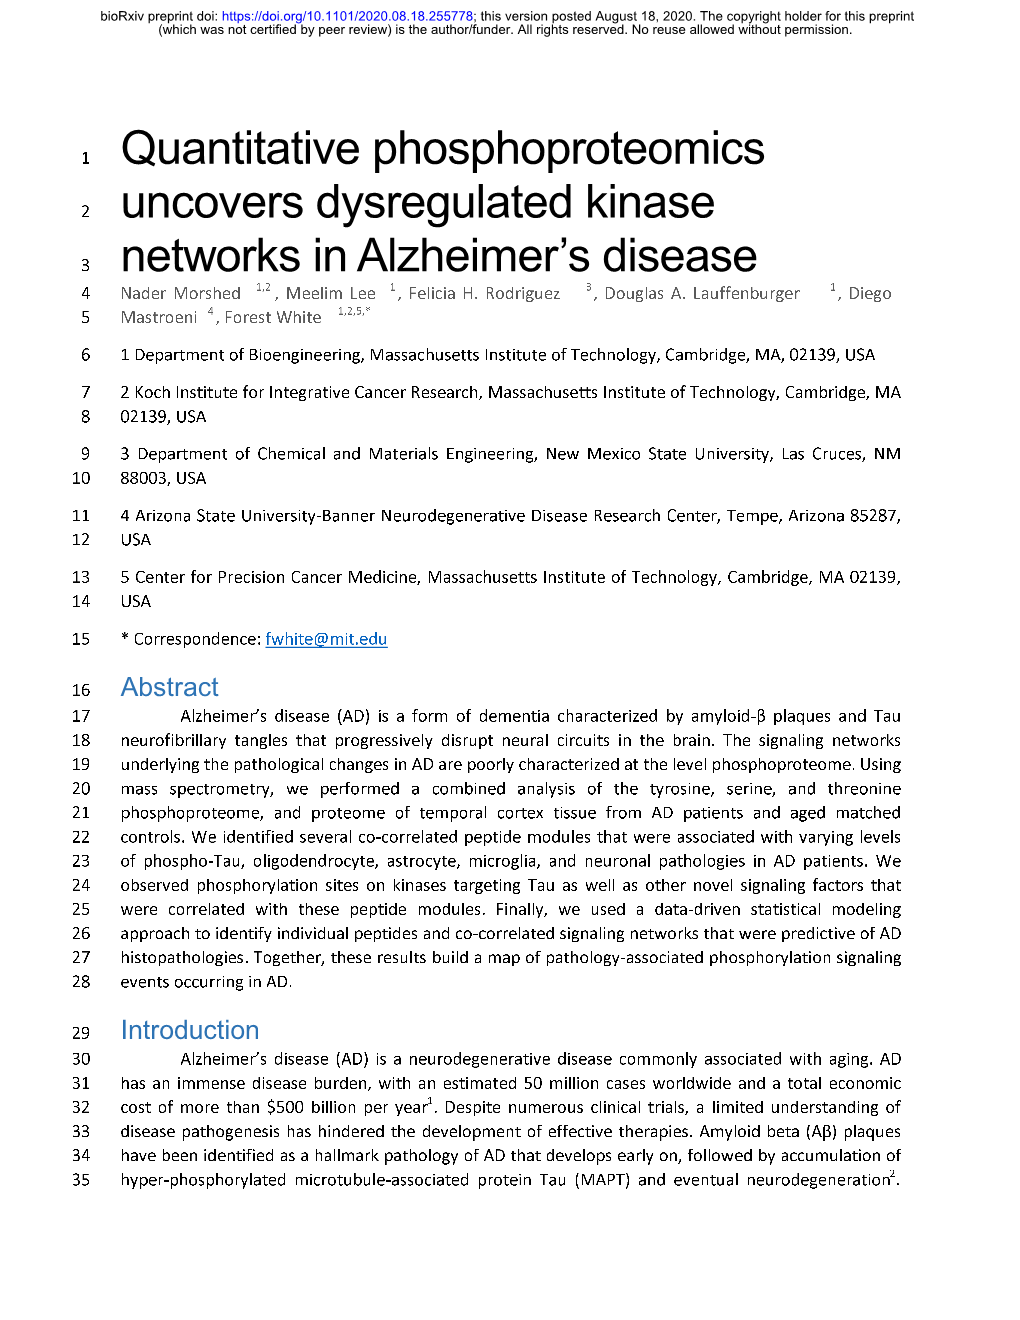 Quantitative Phosphoproteomics Uncovers Dysregulated